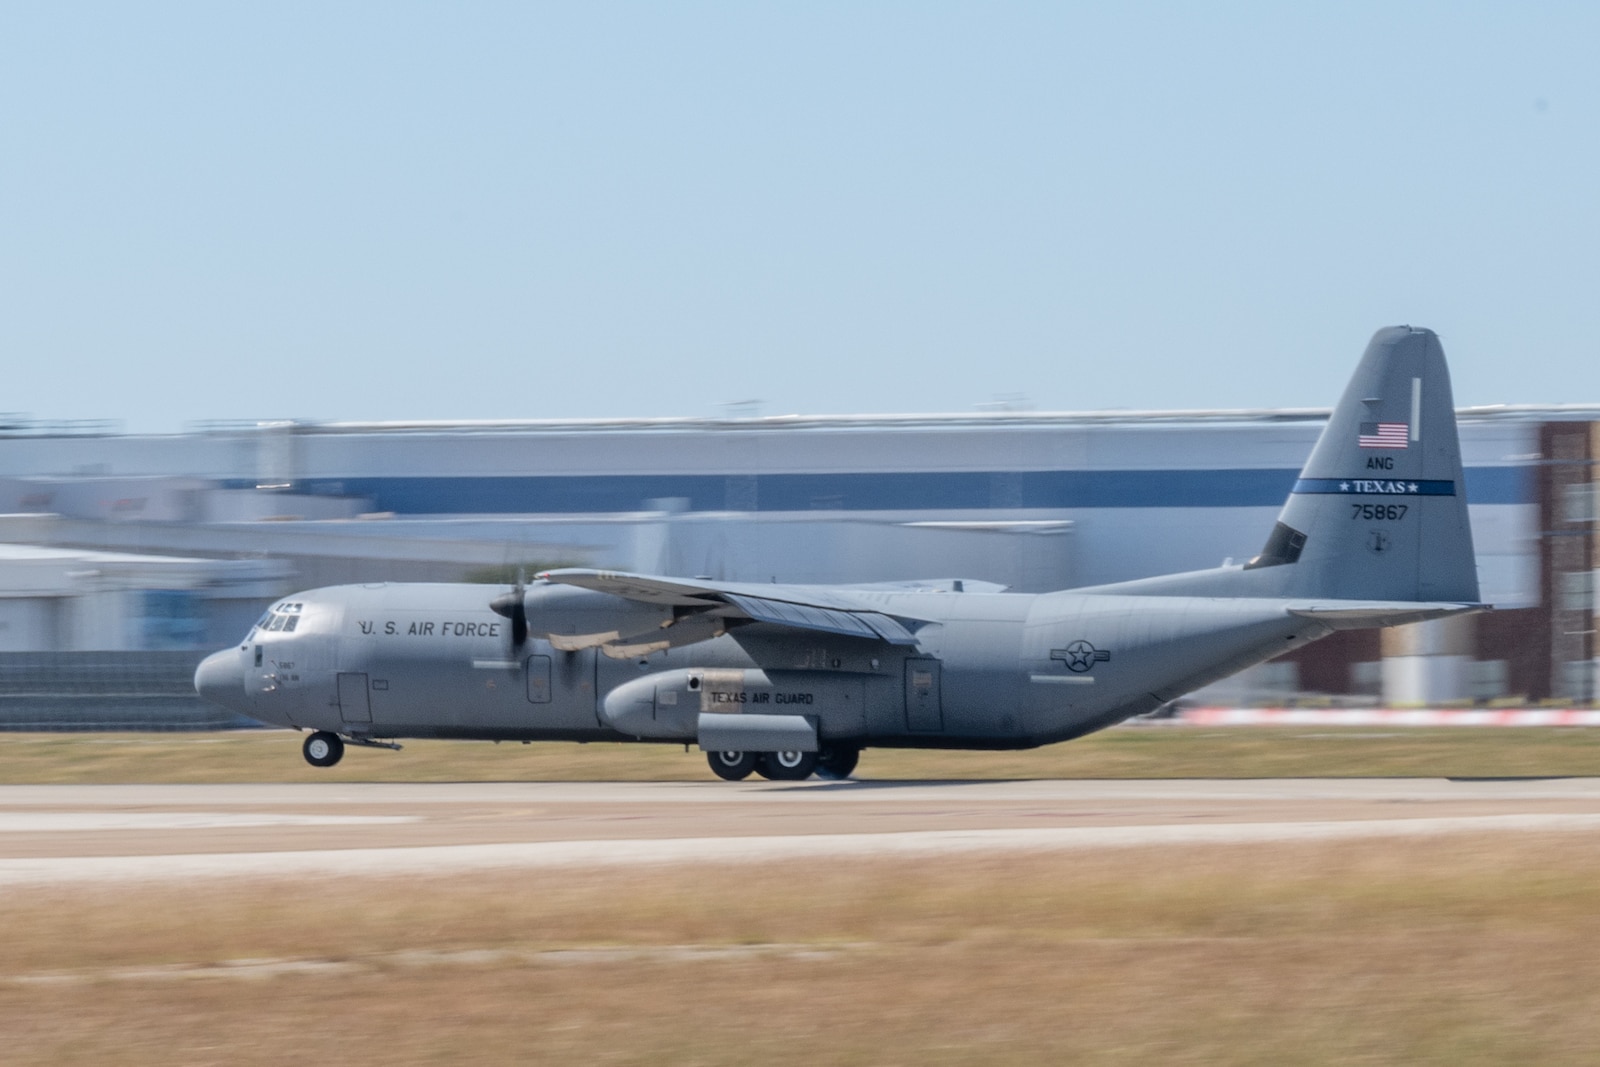 C-130J lands on runway